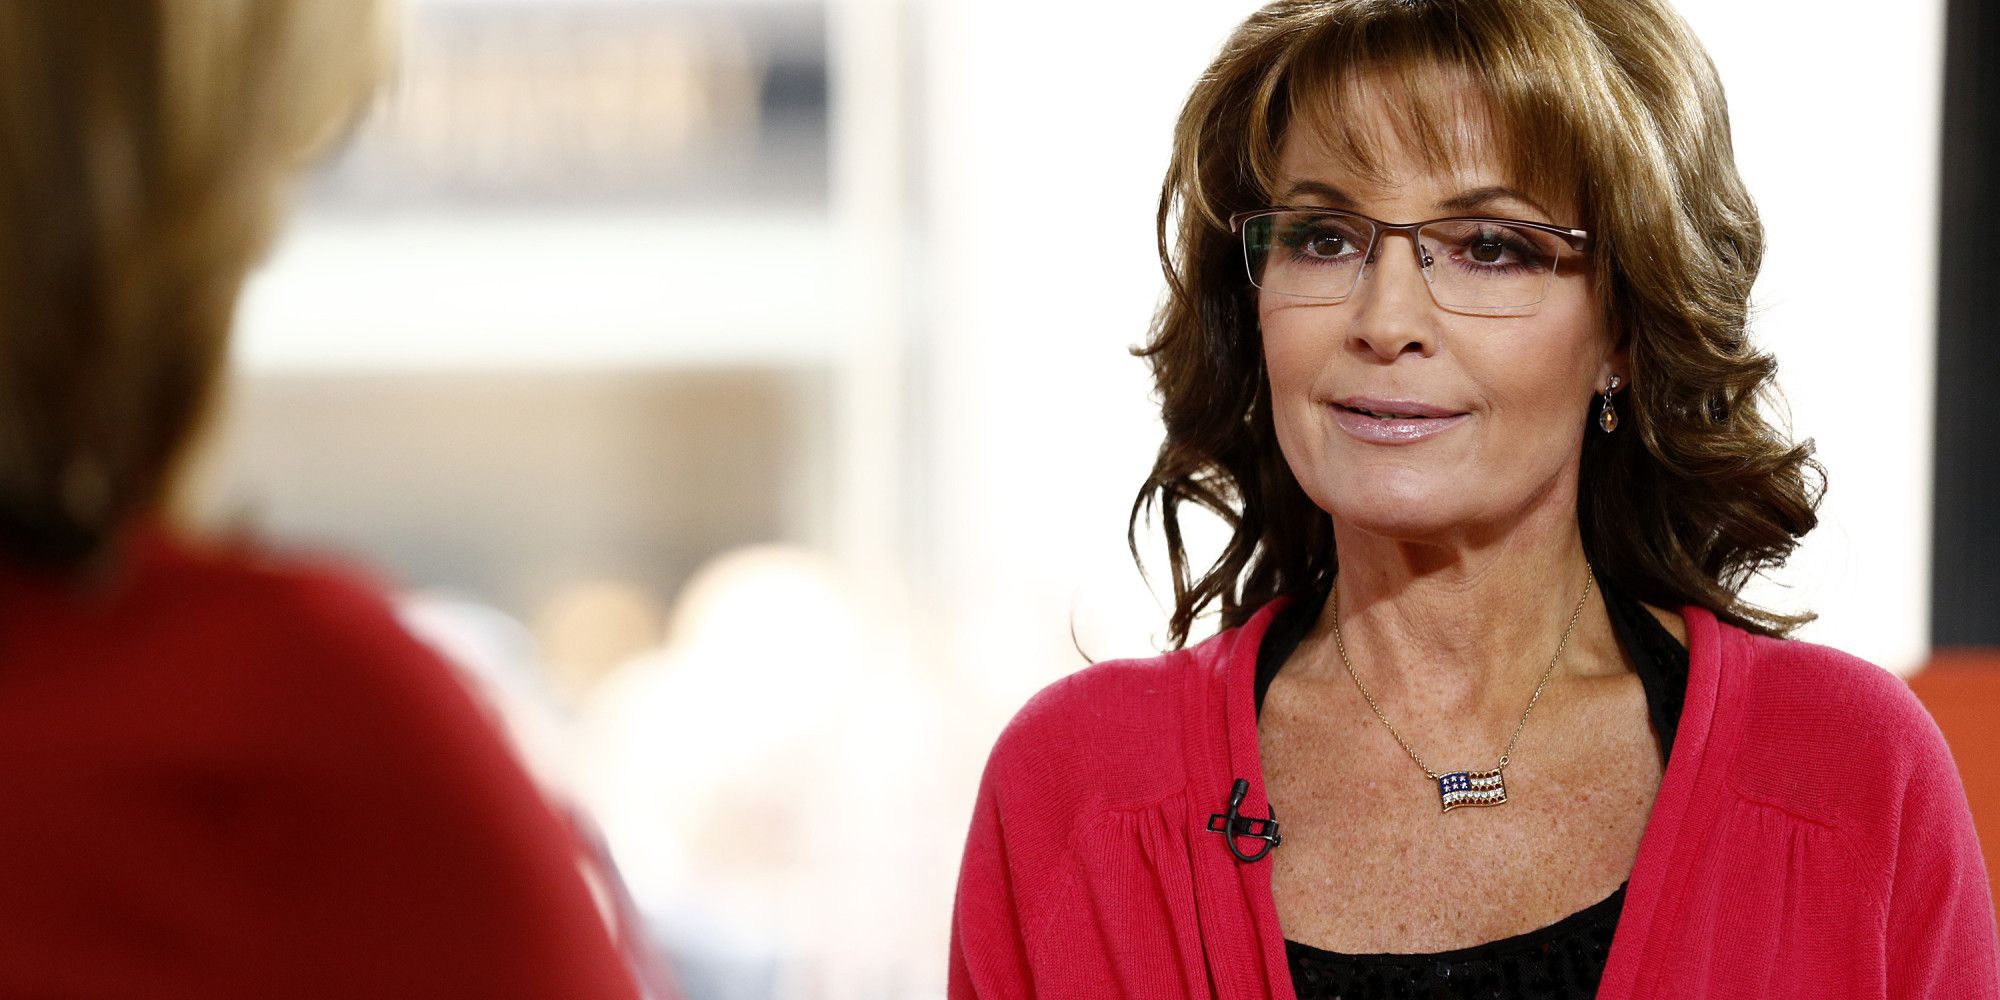 Pictures Of Sarah Palin 